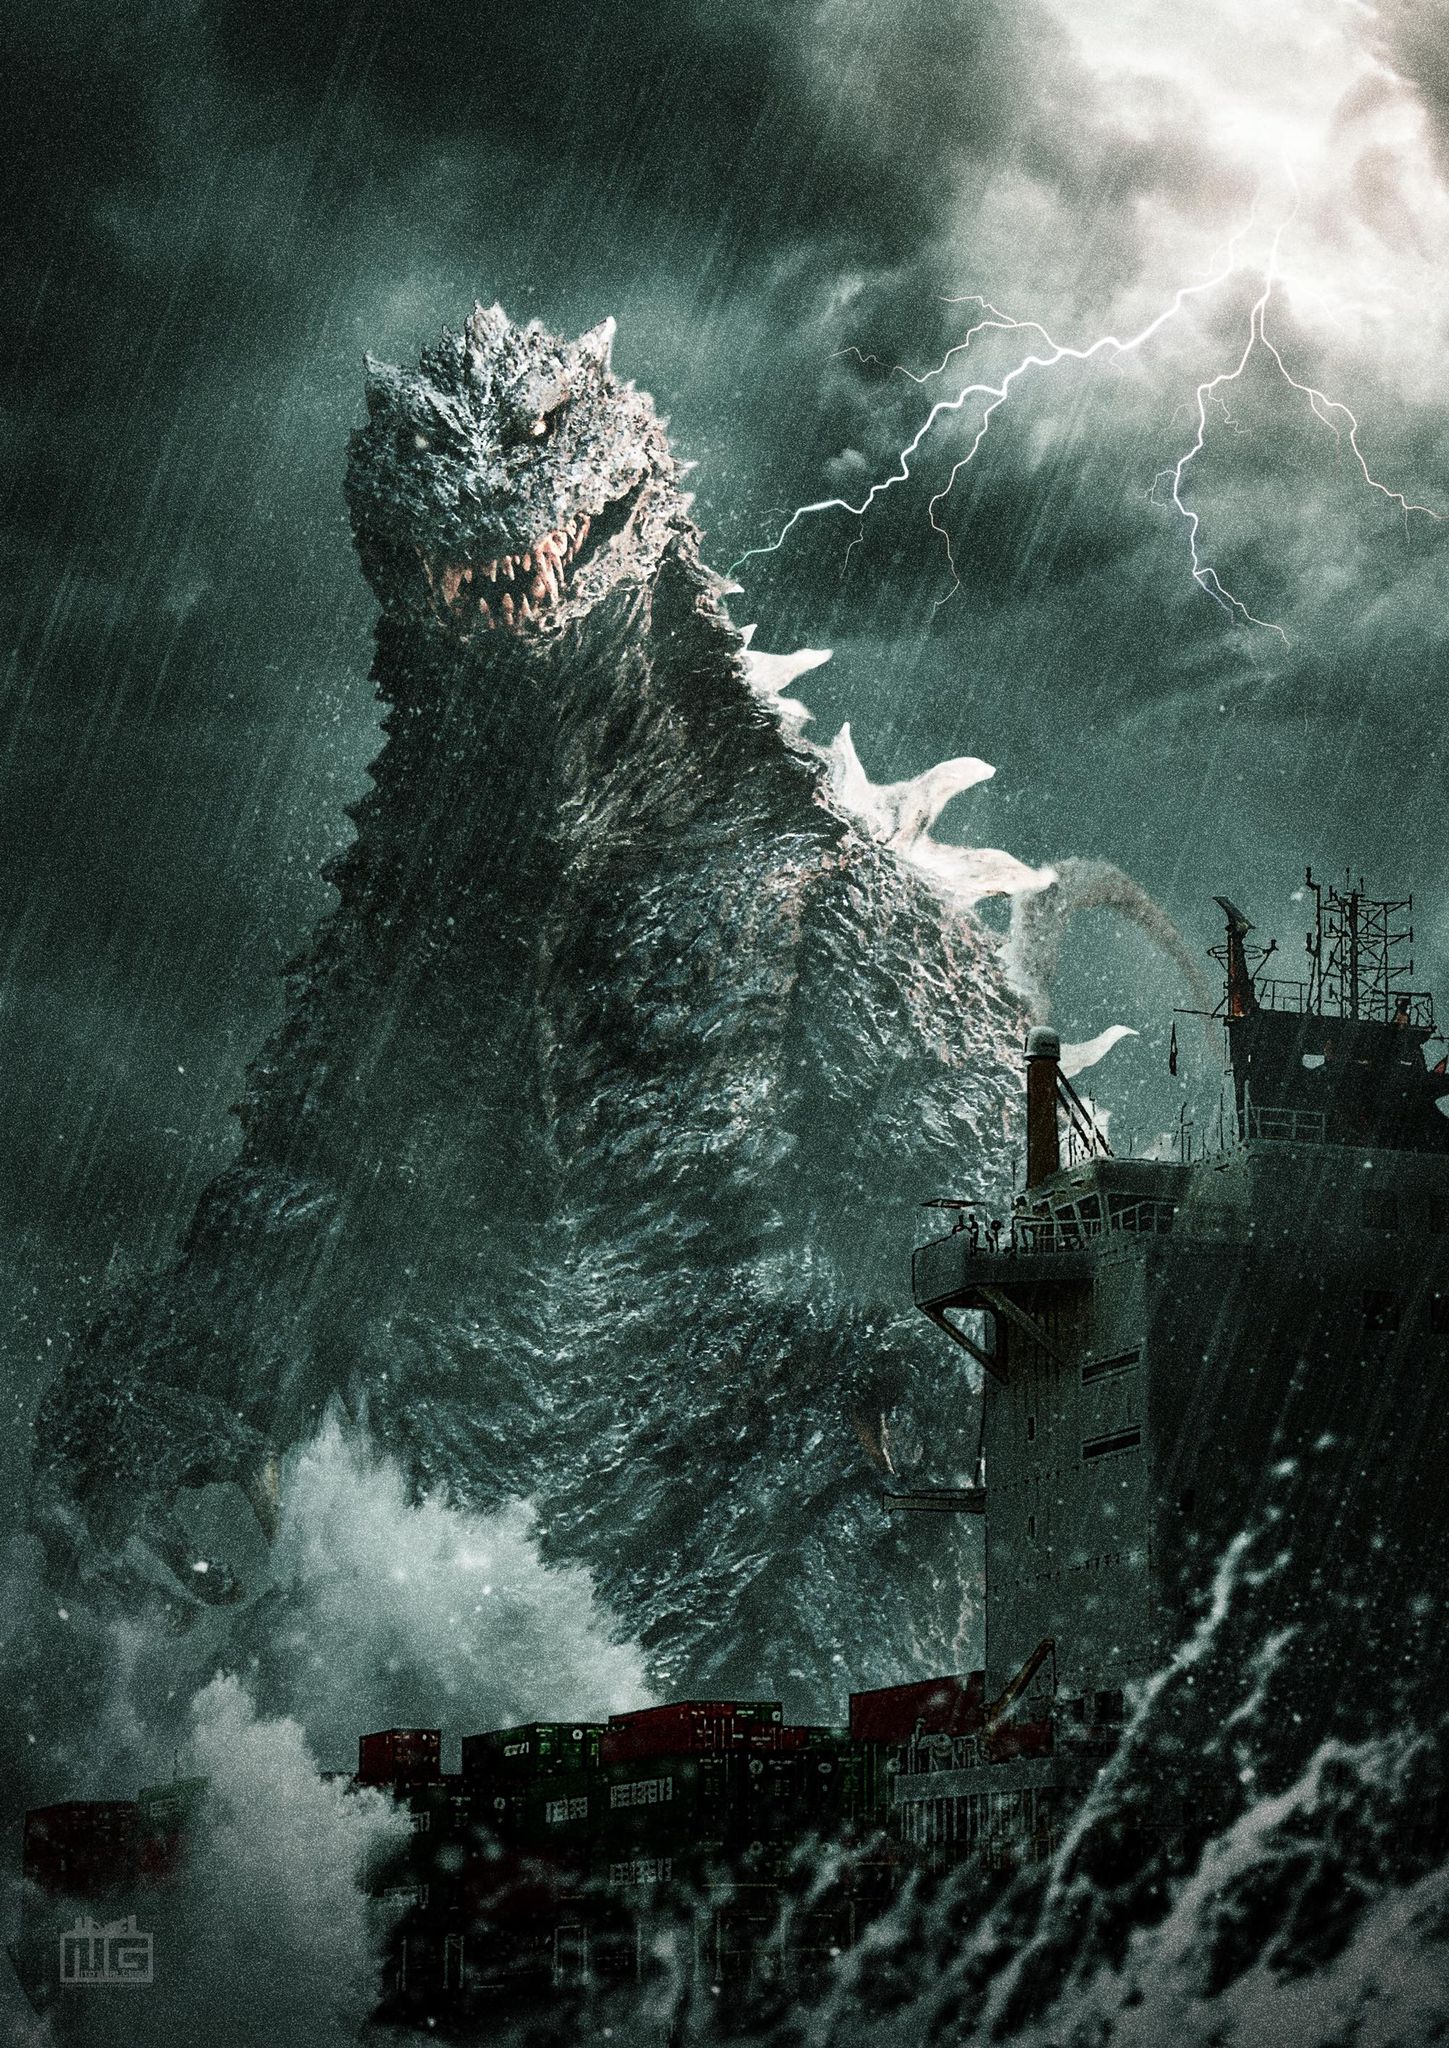 山脇隆 Yamawaki Takashi T S Facto Godzilla Millennium Design Version 合成演出 伊藤さんバージョンも頂きました 嵐の中のゴジラ 洋上の貨物船 絶望的なシチュエーションです T Co Qgk6pho6cm Twitter